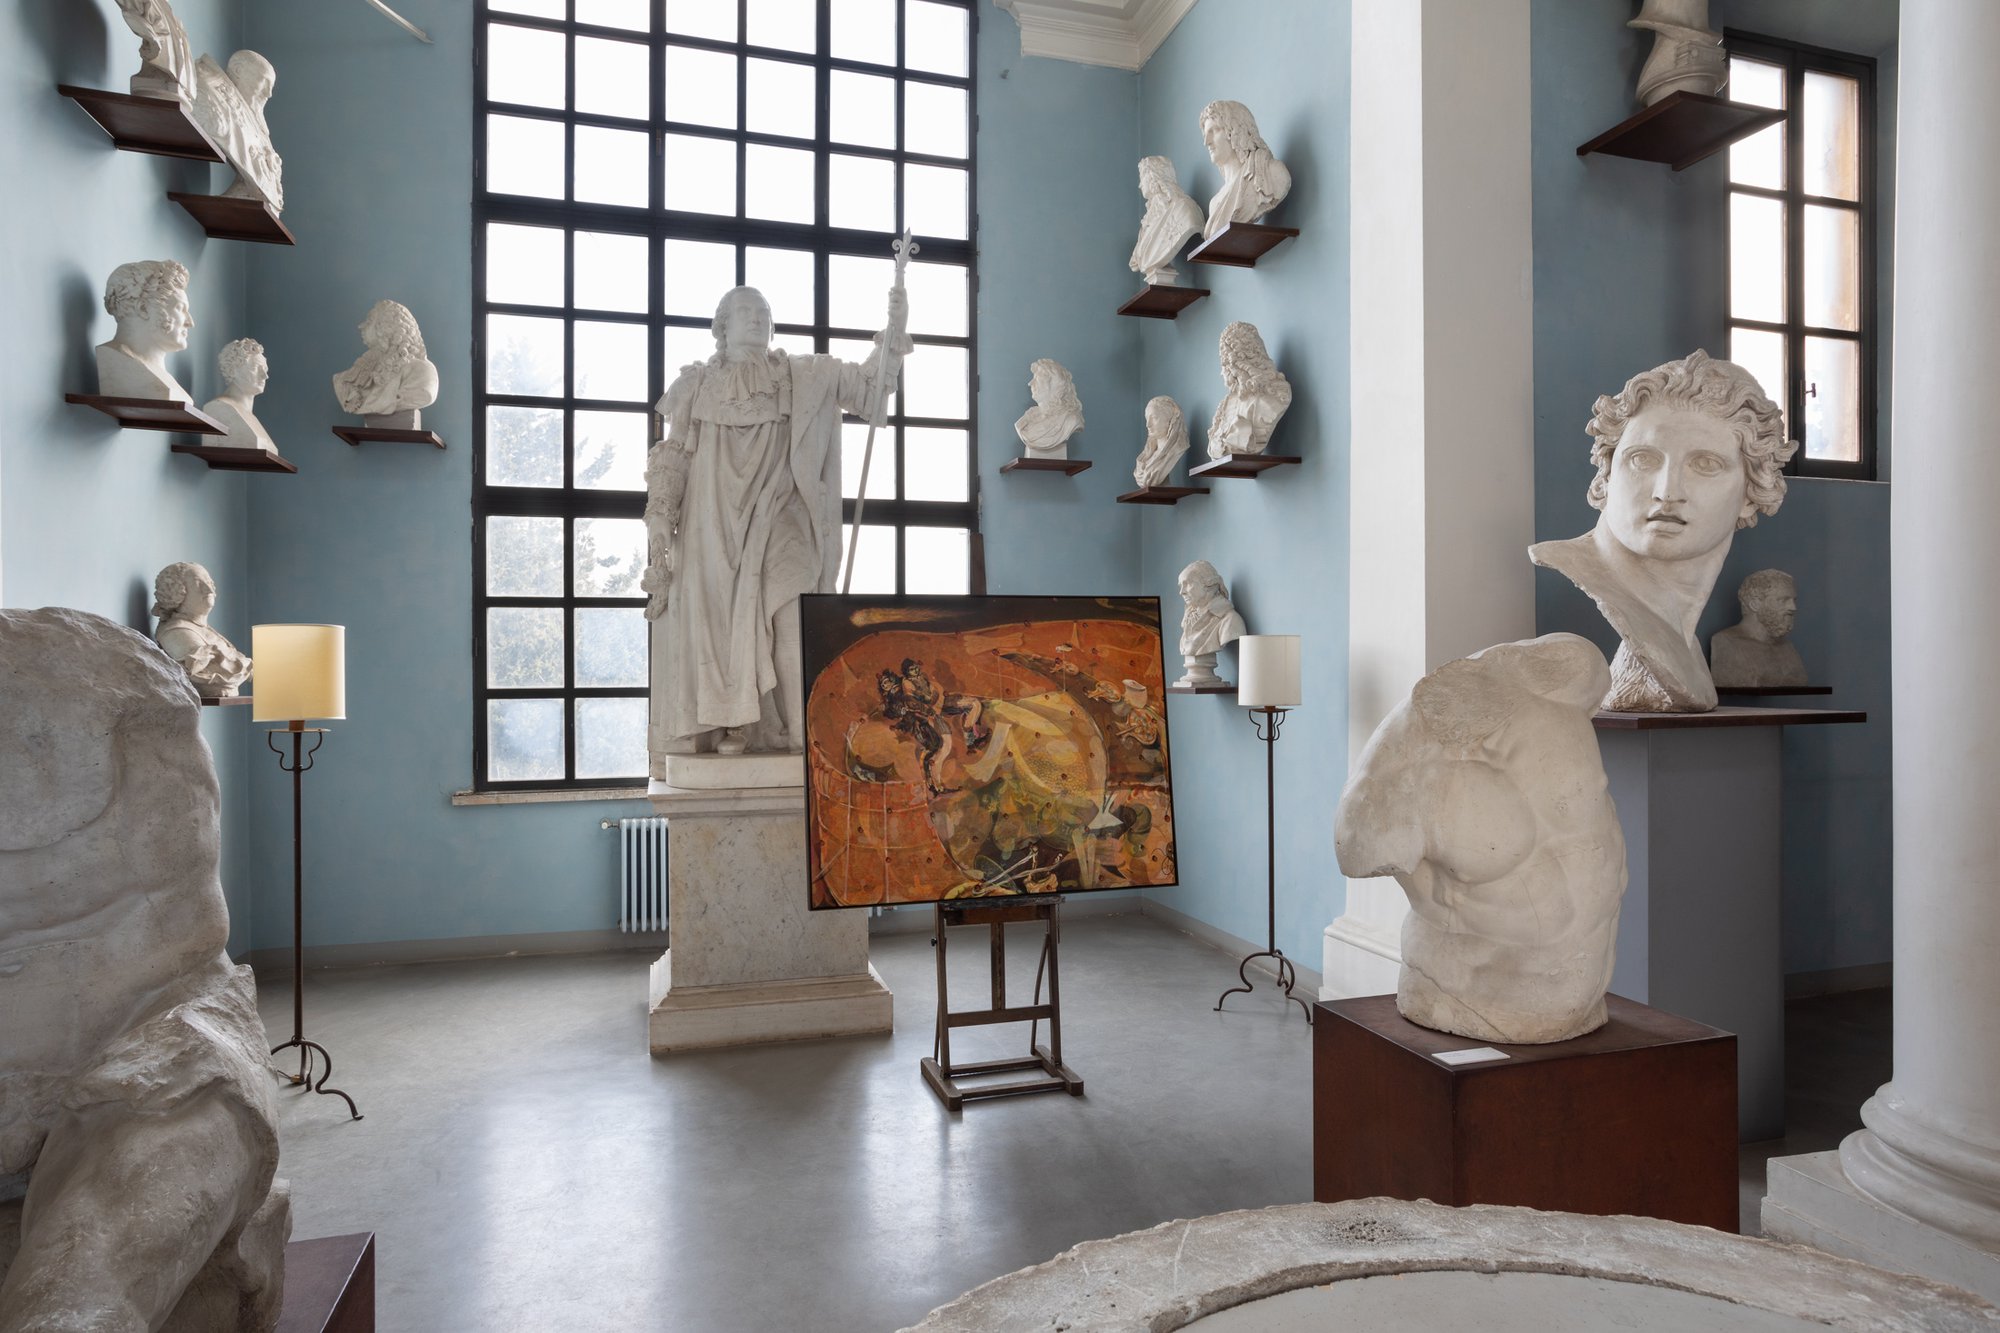 Installation view, Guglielmo Castelli, Guglielmo Castelli – Art Club #38, Curated by Pieropaolo Pancotto, Villa Medici, Rome